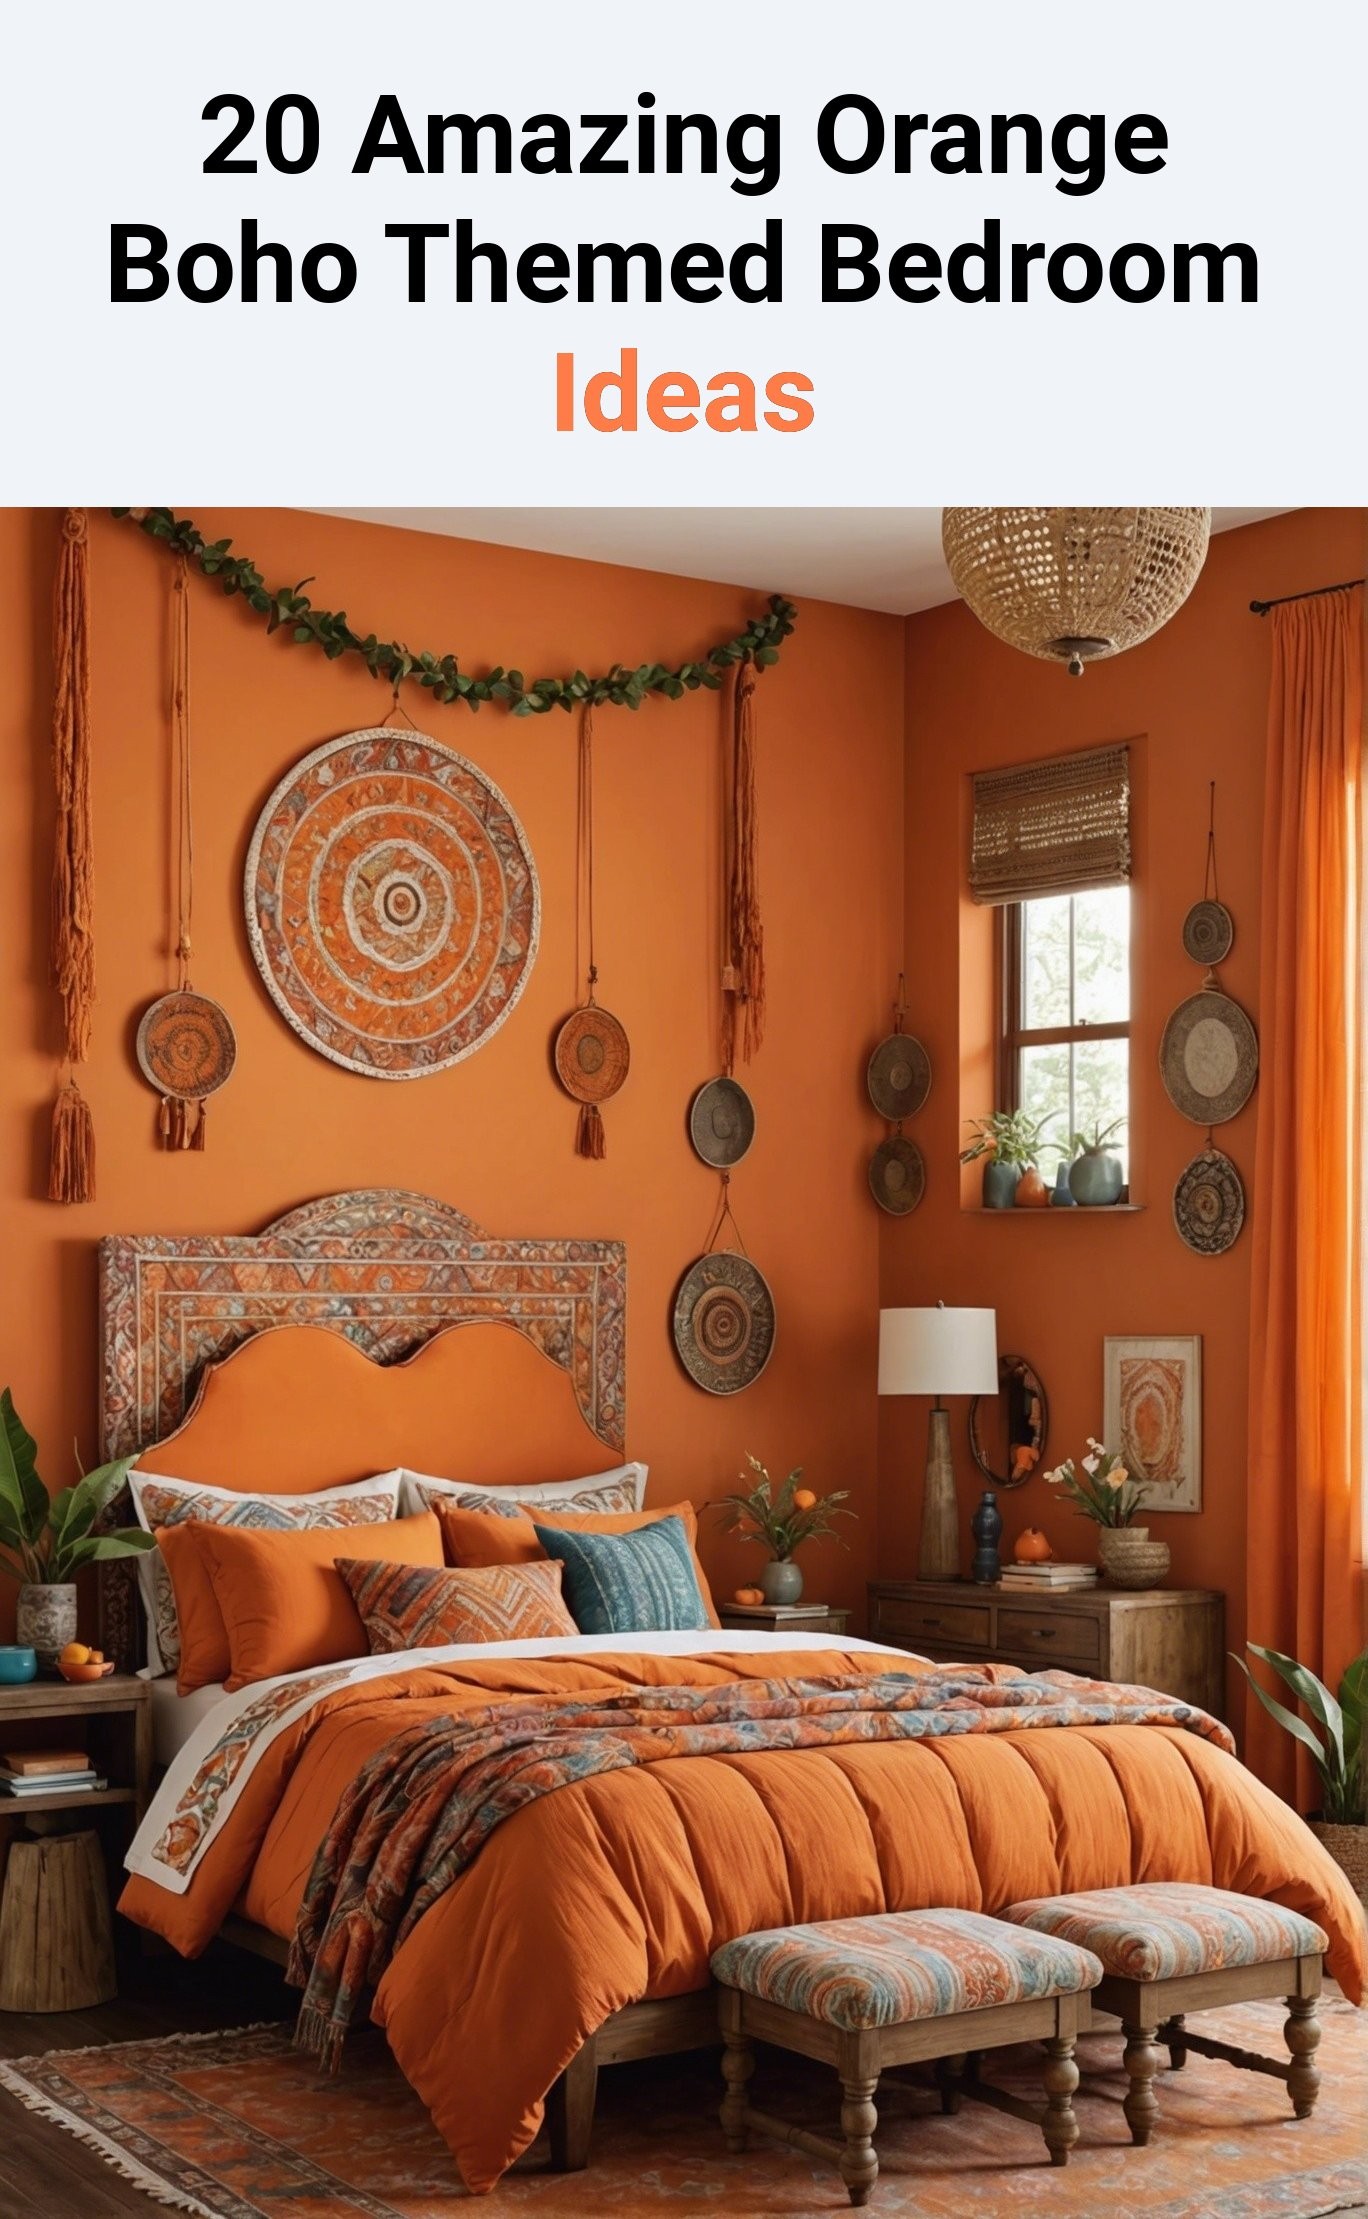 20 Amazing Orange Boho Themed Bedroom Ideas